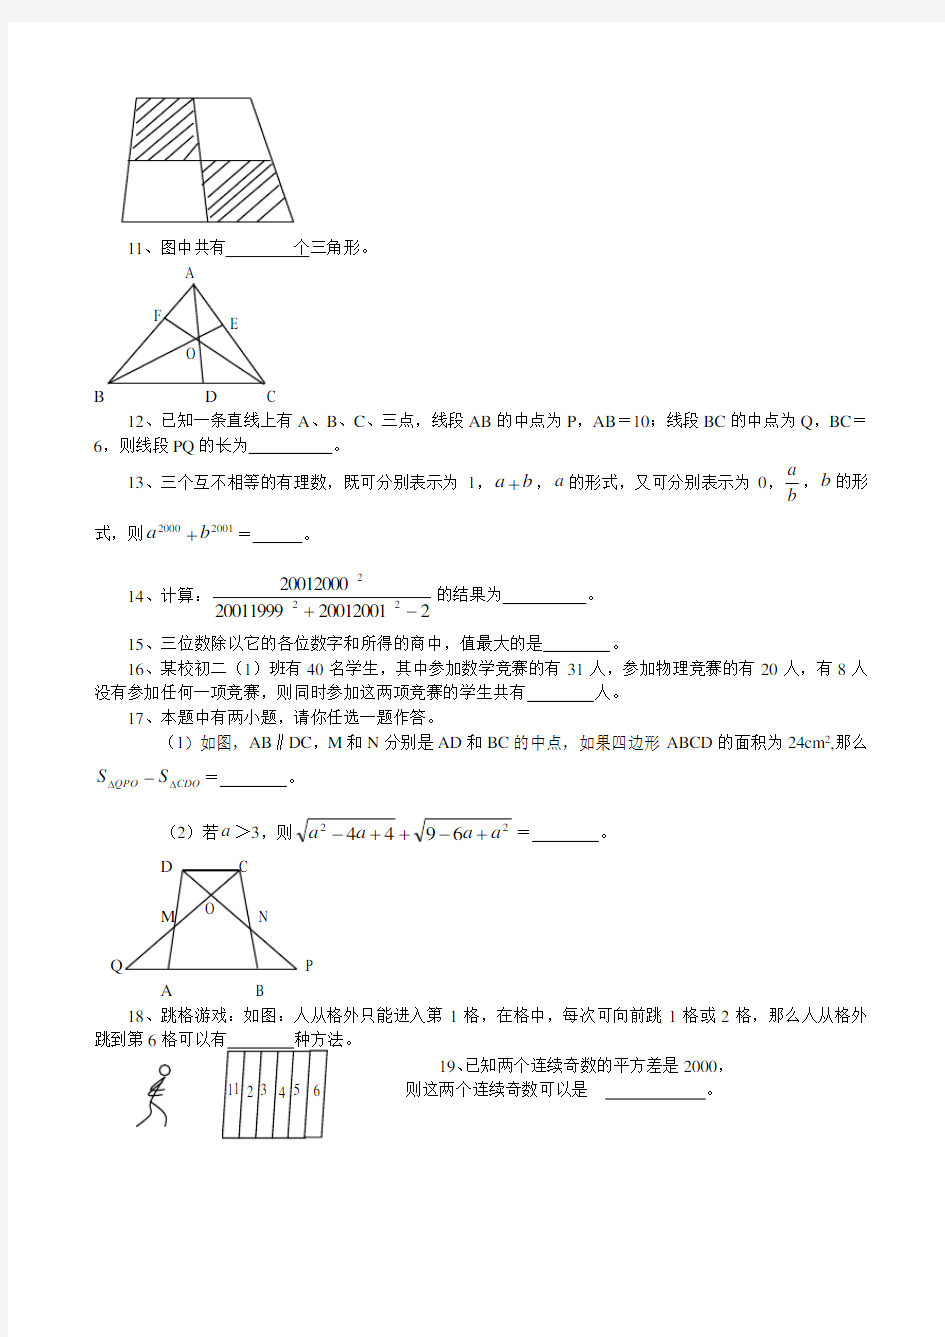 江苏省第十五届初中数学竞赛